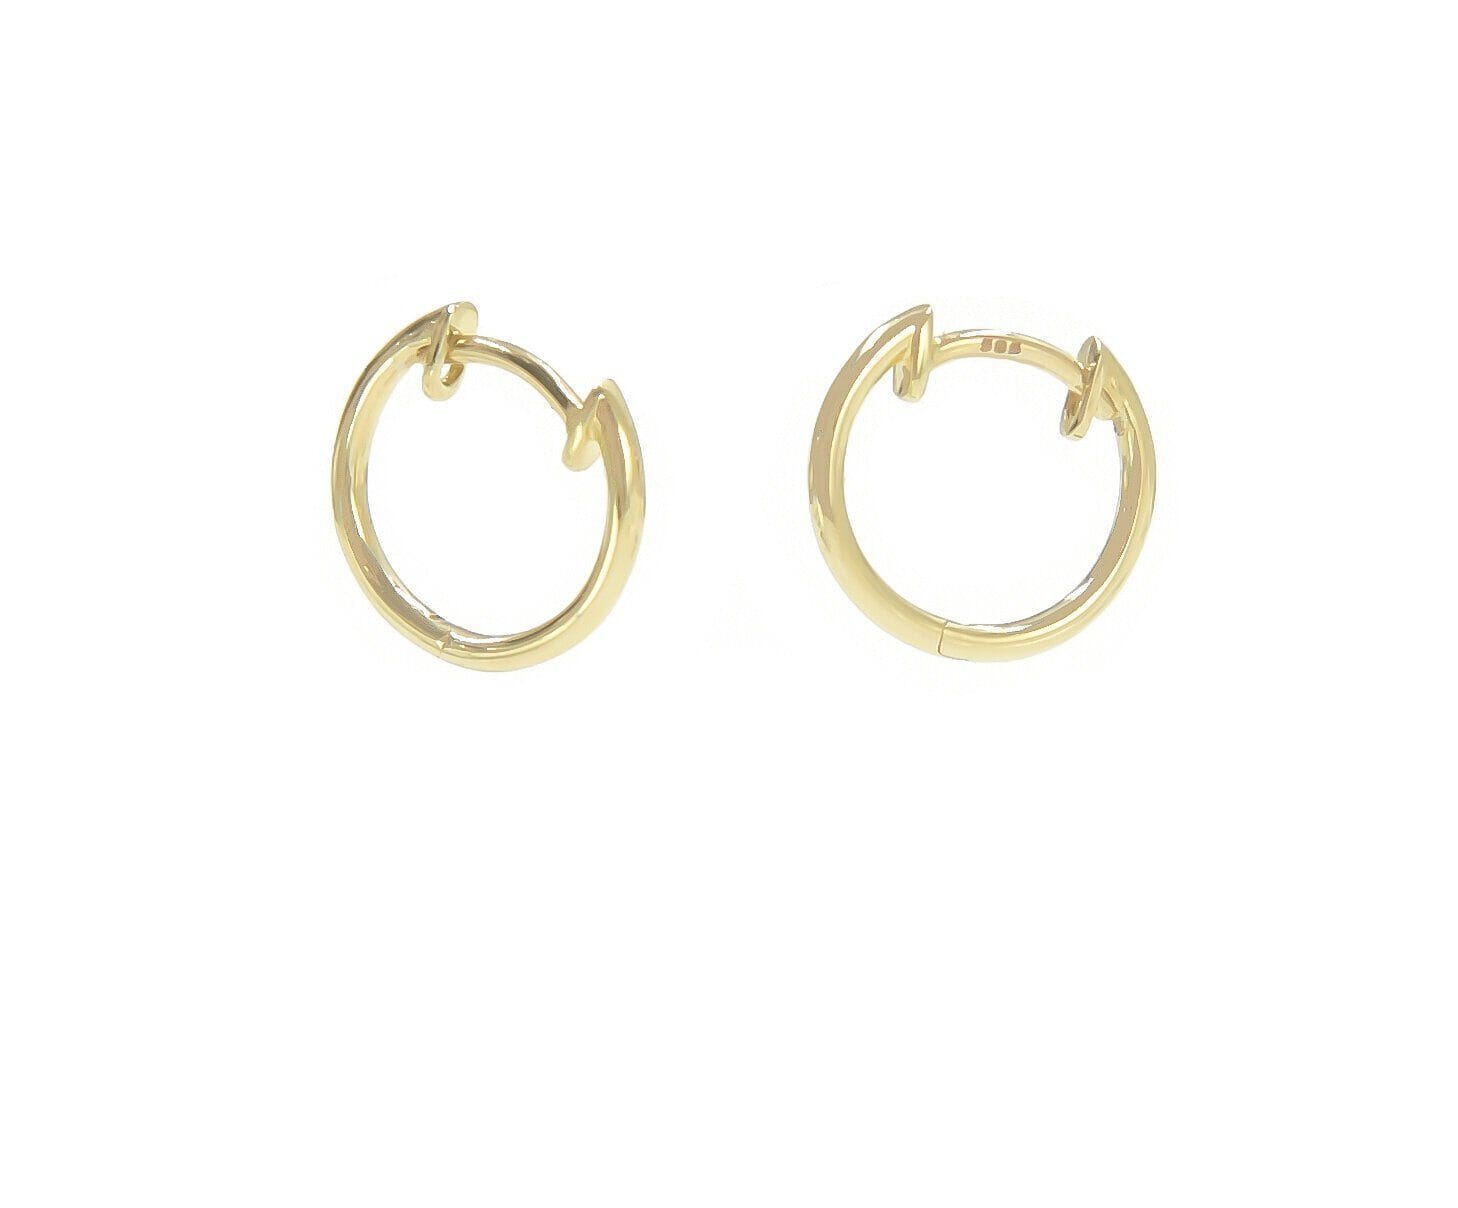 Dylan Hoops (perfect size) Earrings - BONDEYE JEWELRY ®